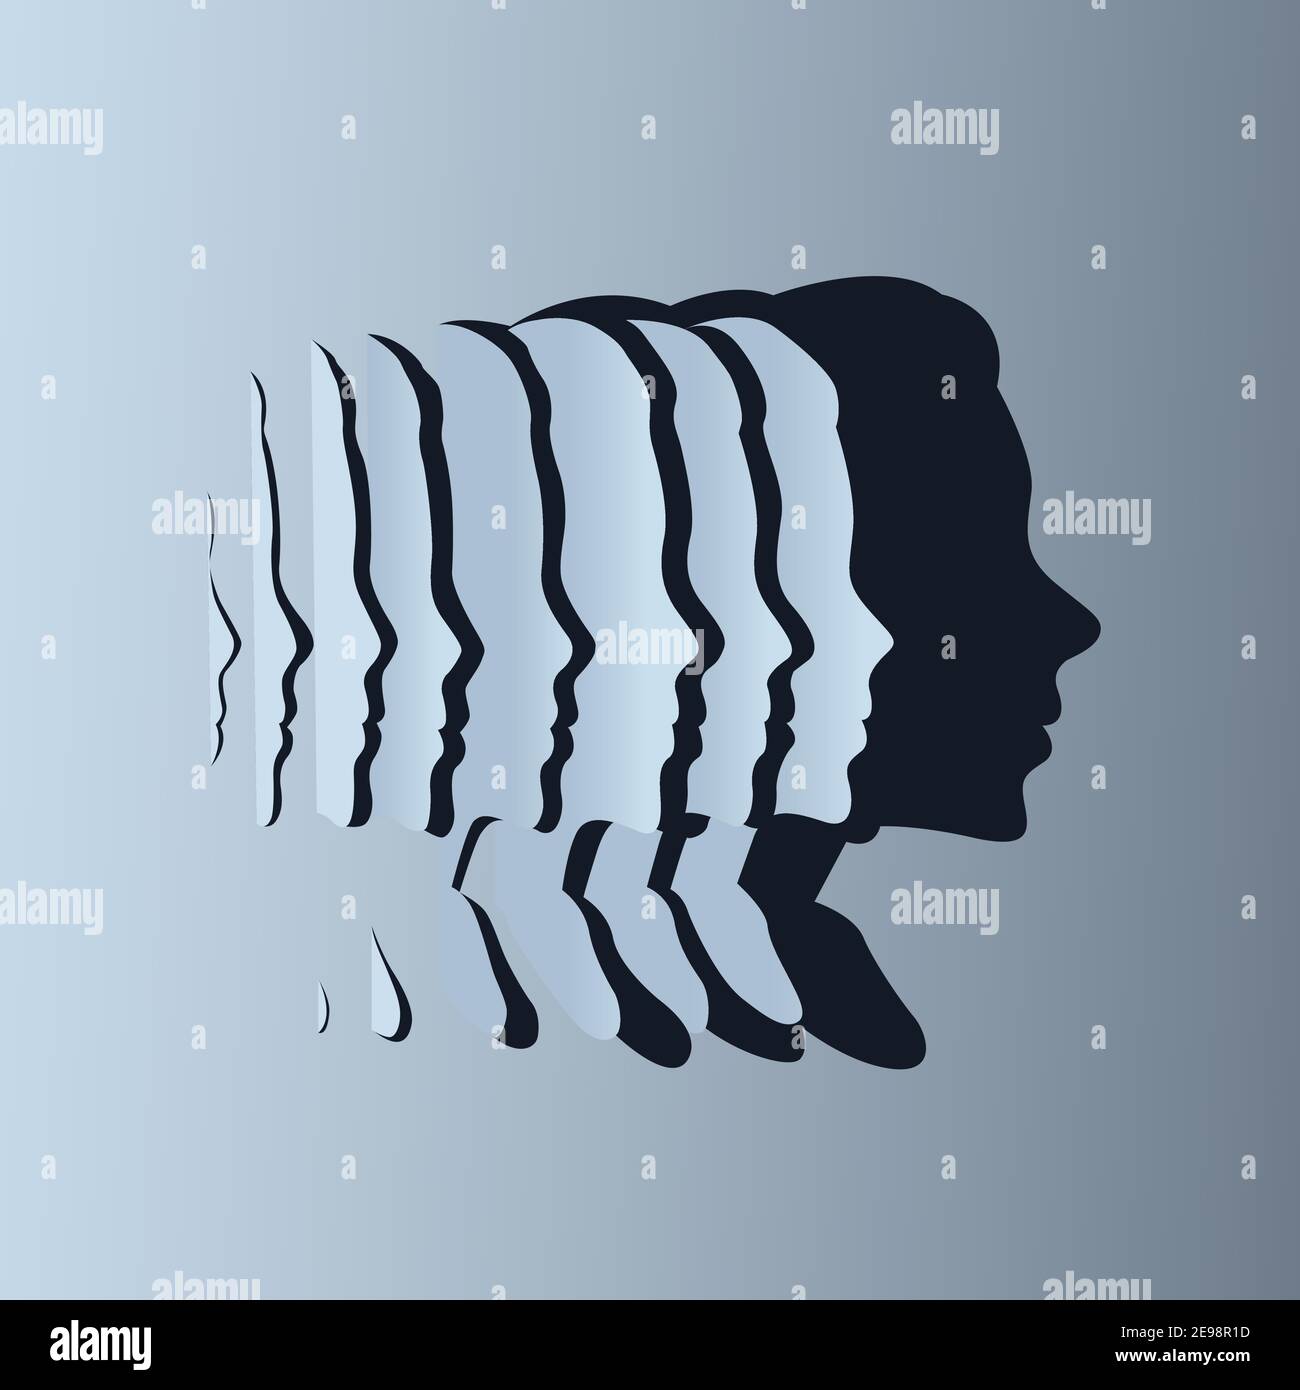 Des tranches de papier créant une silhouette d'ombre d'une forme de tête pour femme. Concept de santé, d'esprit et de bien-être. Illustration vectorielle. Illustration de Vecteur